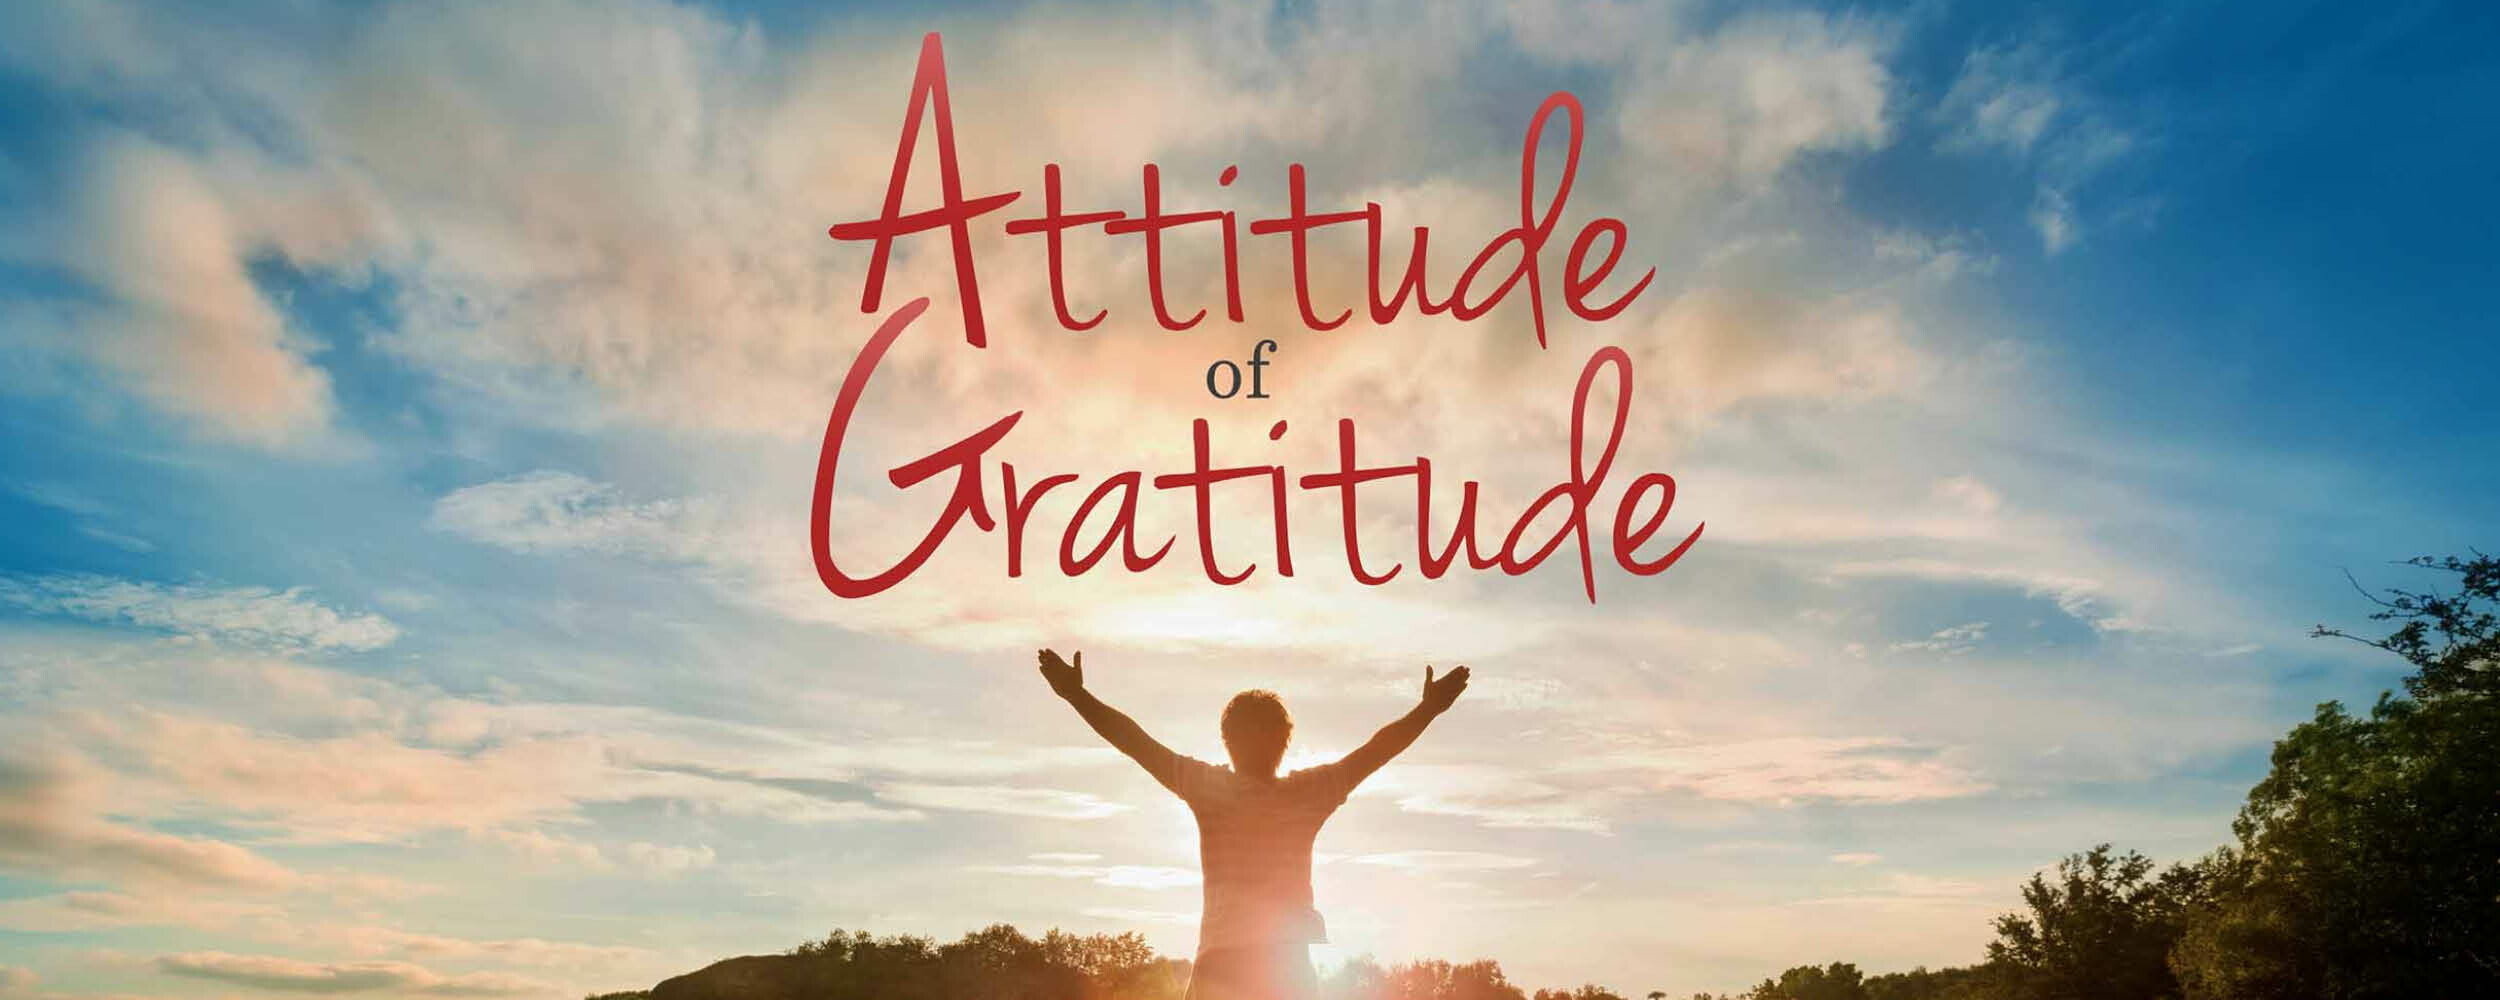 Attitude of Gratitude, Week 3, Children's Message